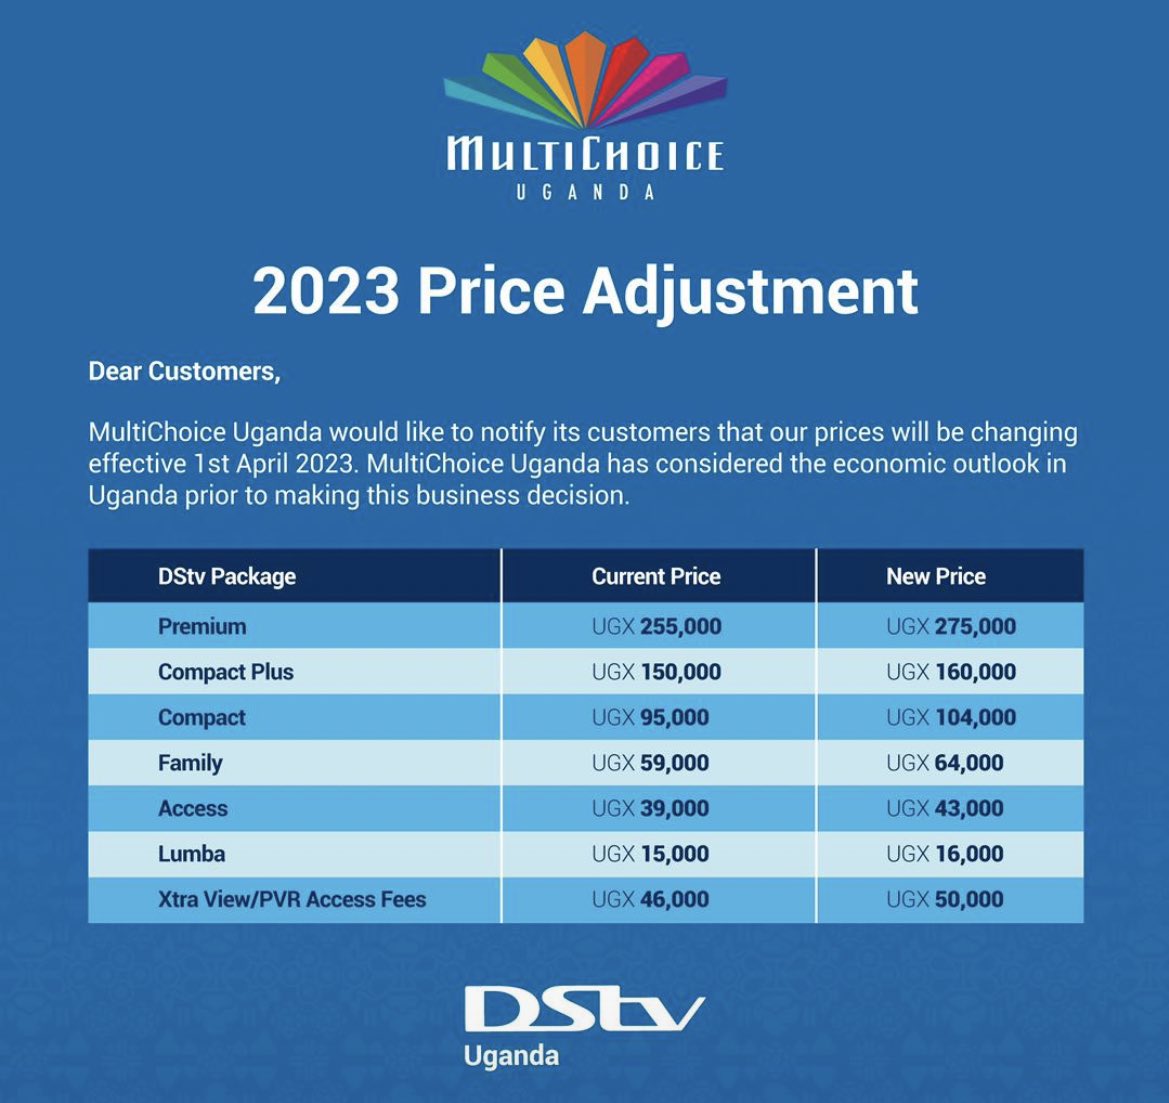 DSTV Uganda new prices -